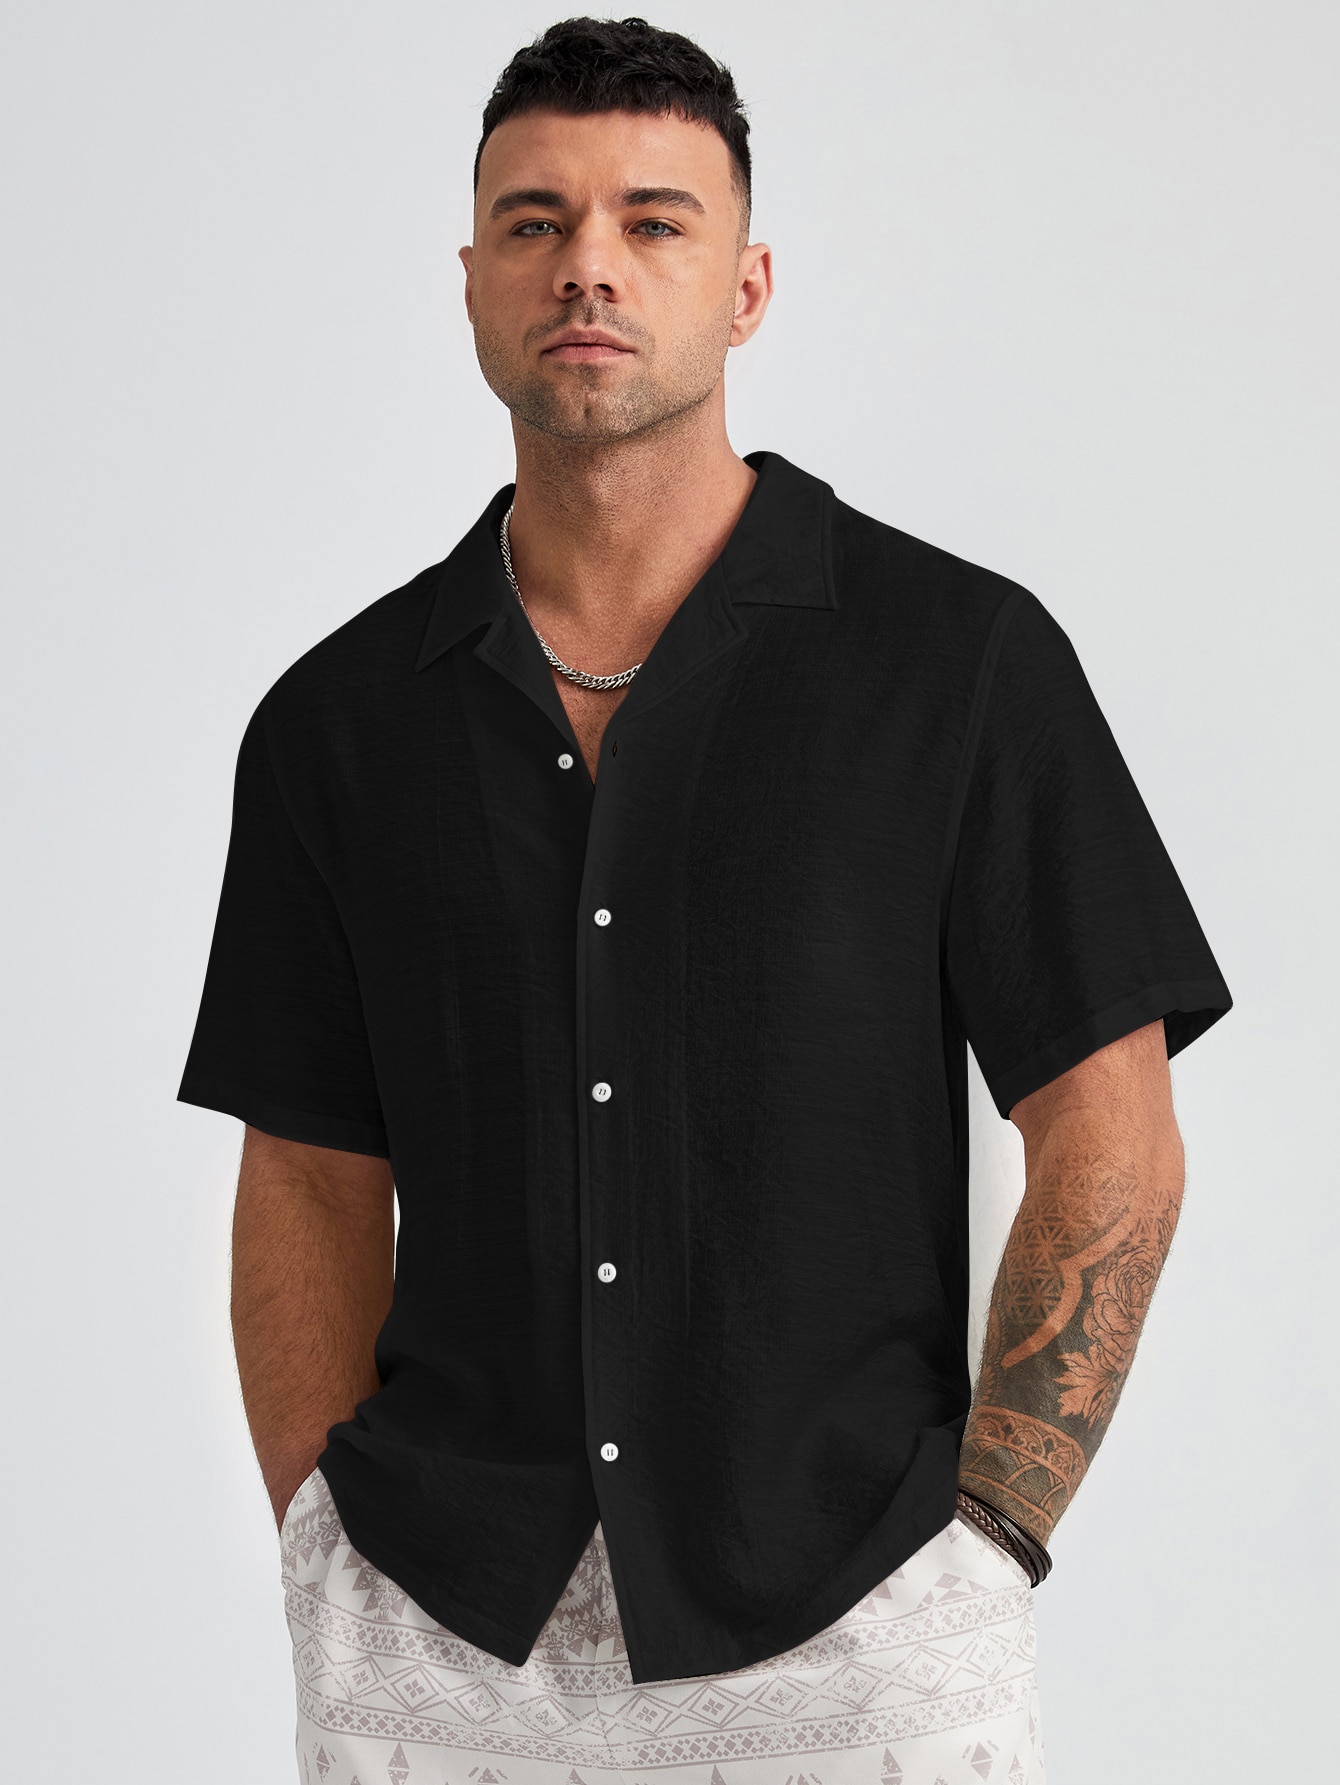 цена Manfinity Homme Мужская однотонная тканая рубашка больших размеров с коротким рукавом больших размеров, черный